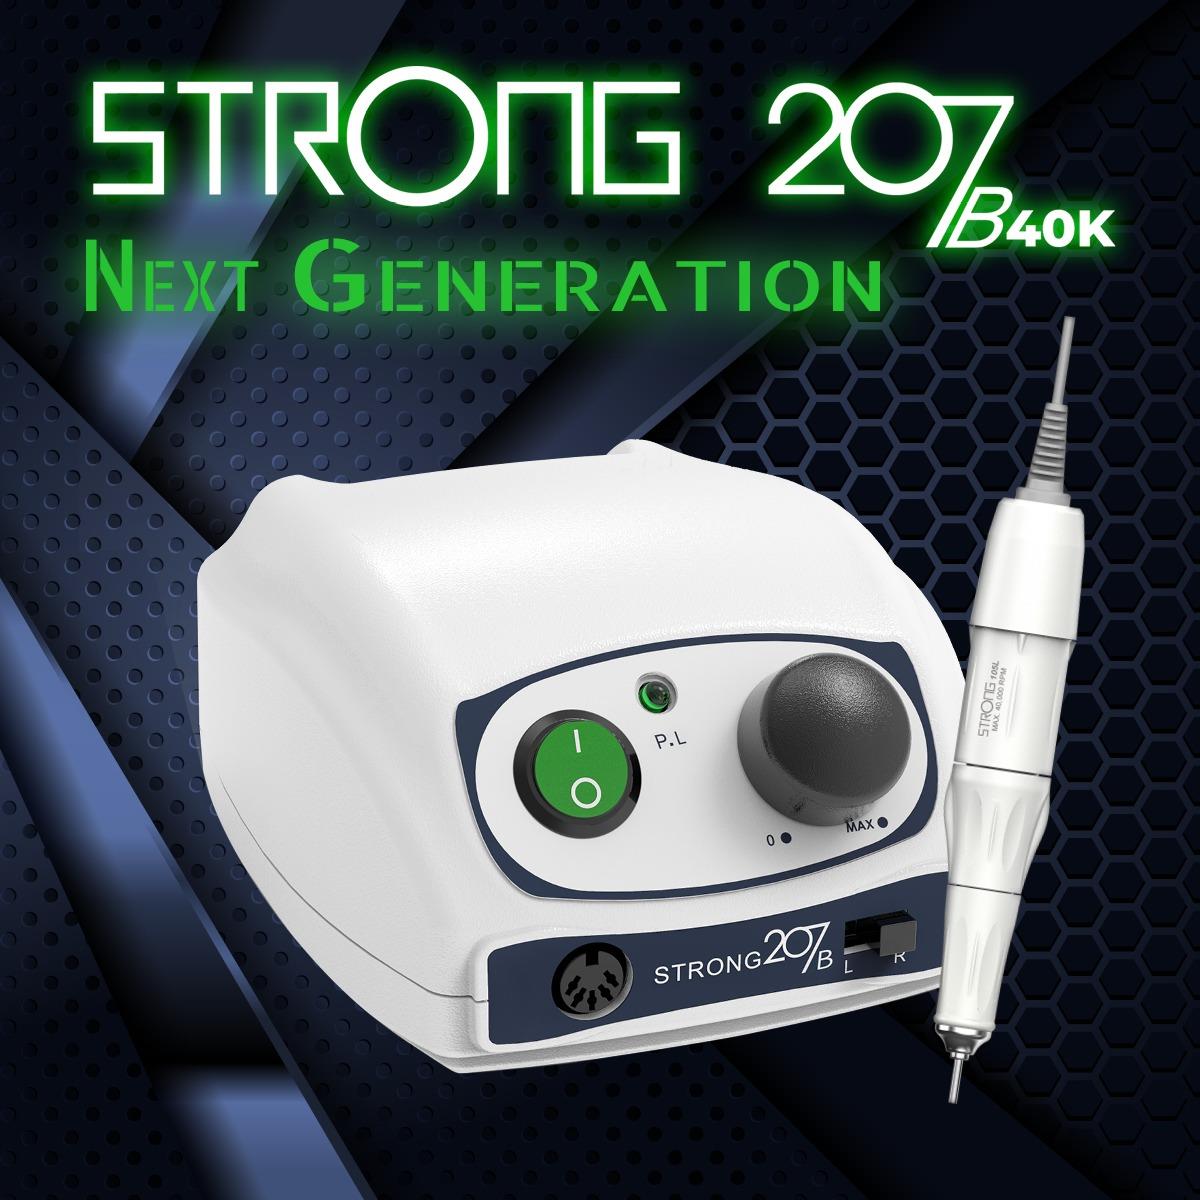 מכונת שיוף סטרונג 207b החדשה+ מנורת ייבוש סאן2+ 2 ראשי מניקור